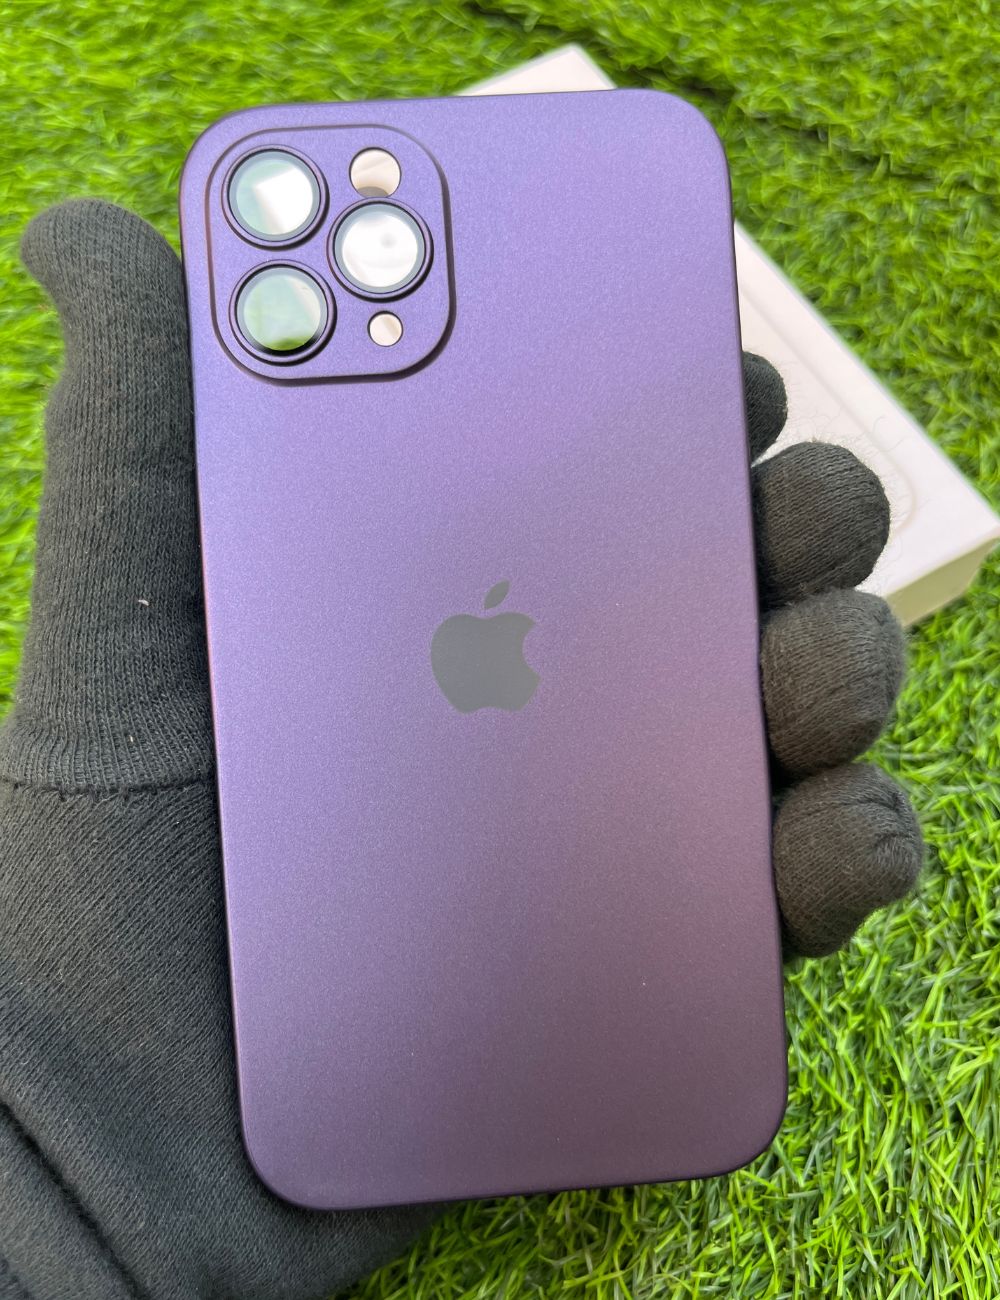 Deep Purple Apple iPhone Skins 